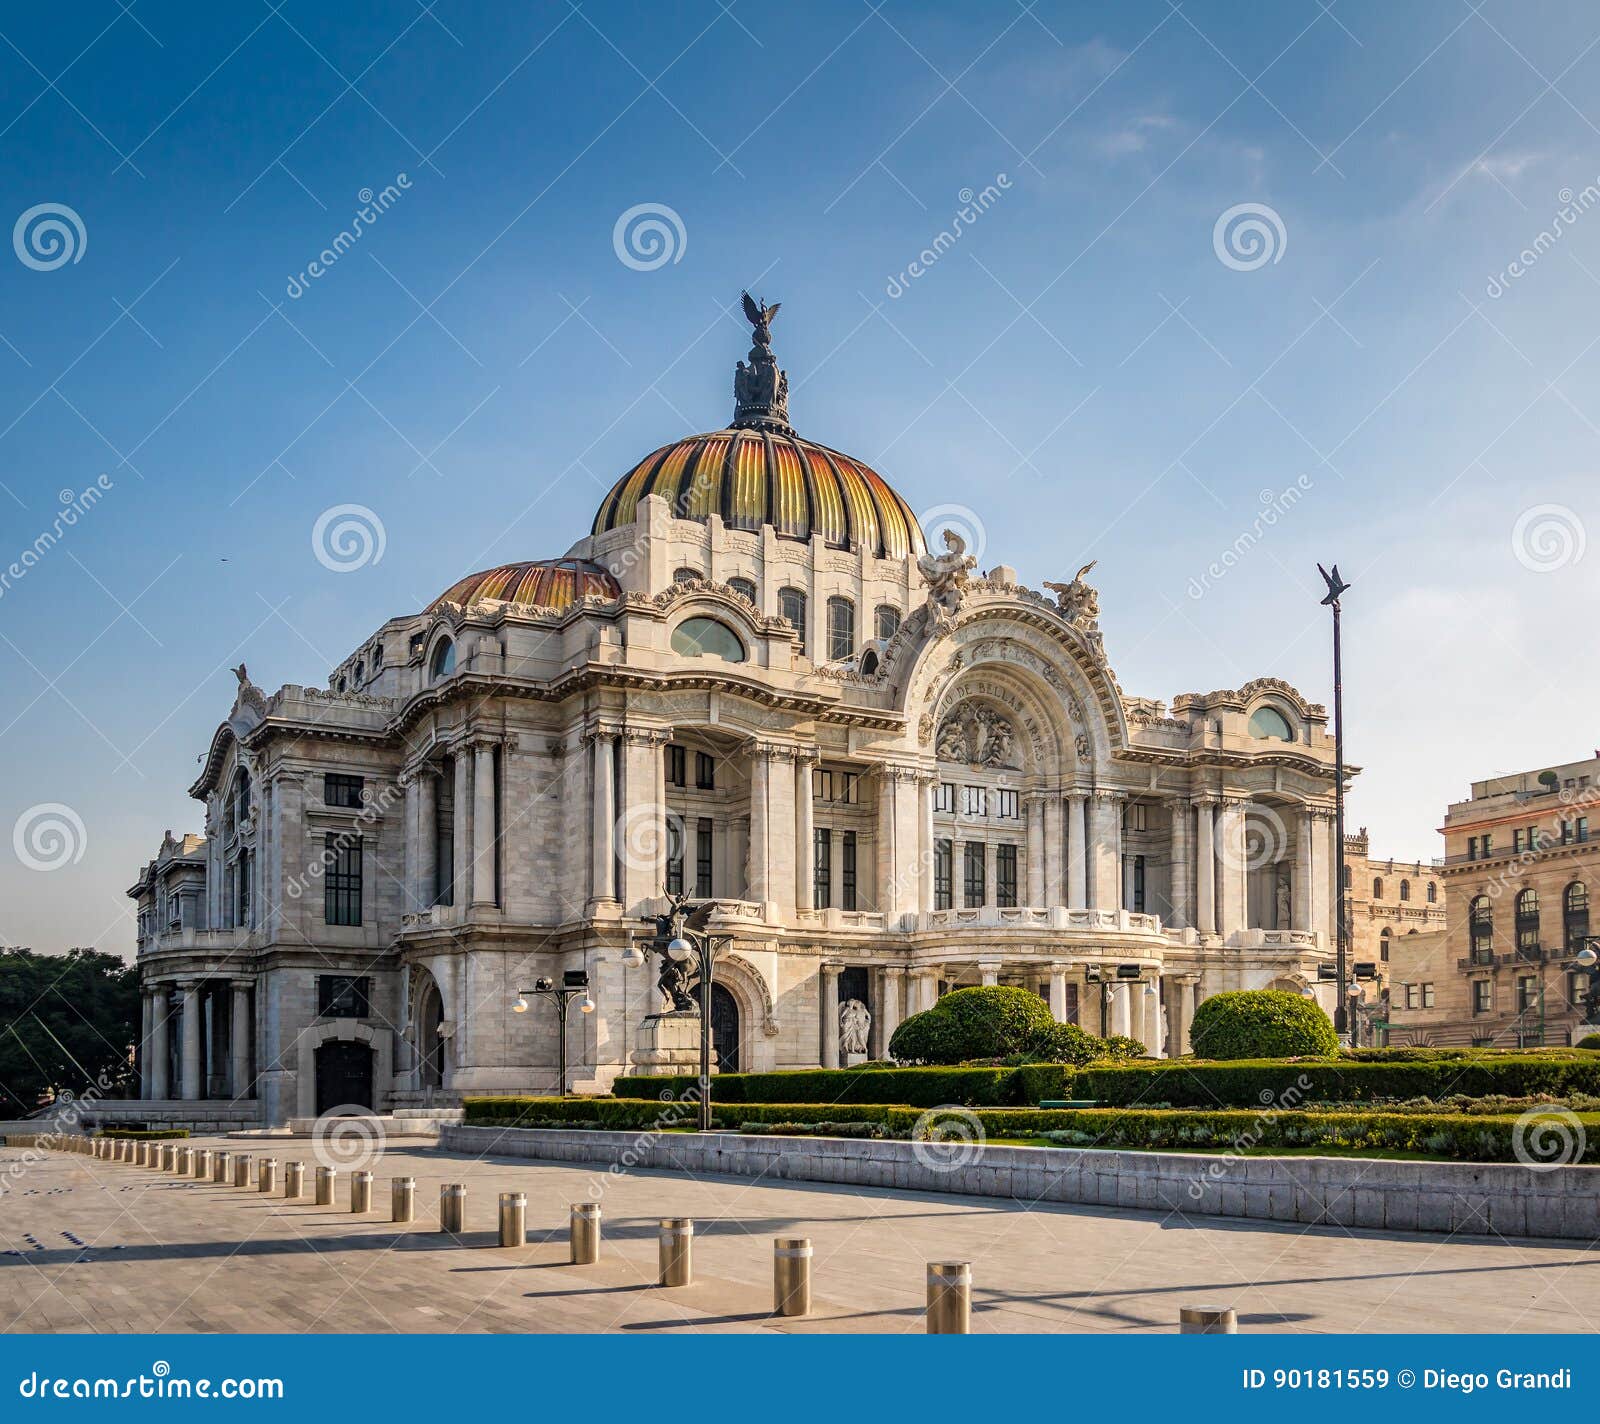 palacio de bellas artes fine arts palace - mexico city, mexico